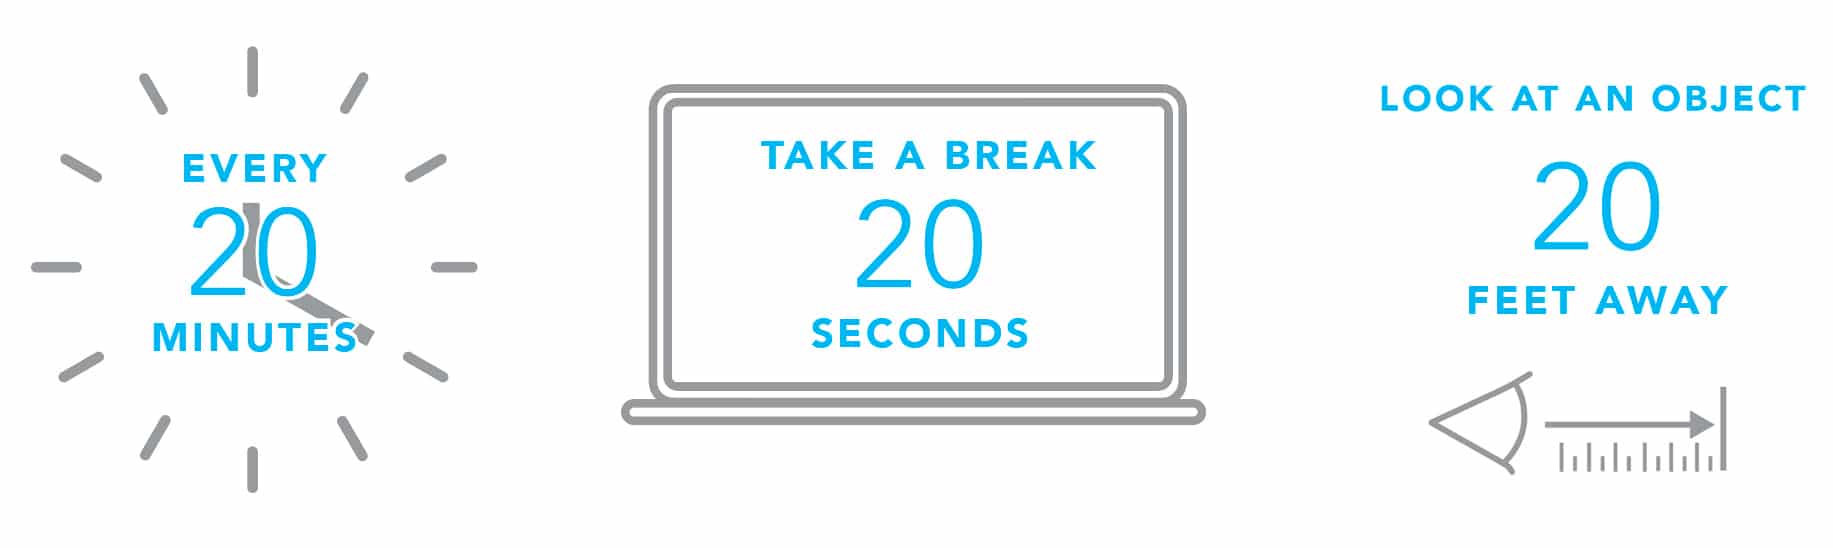 20-20-20 Rule for Screen Time Breaks